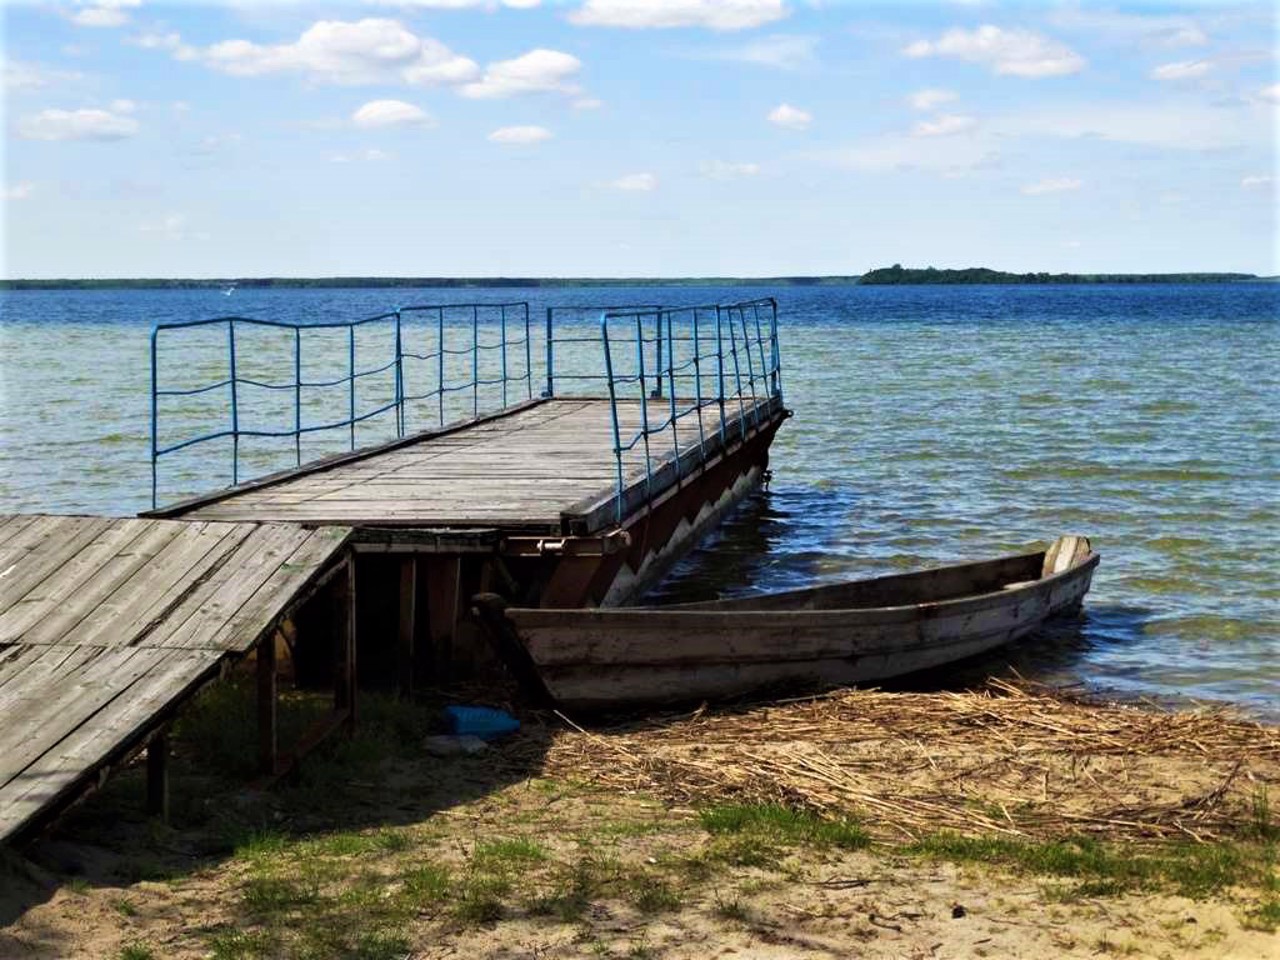 Озеро Світязь